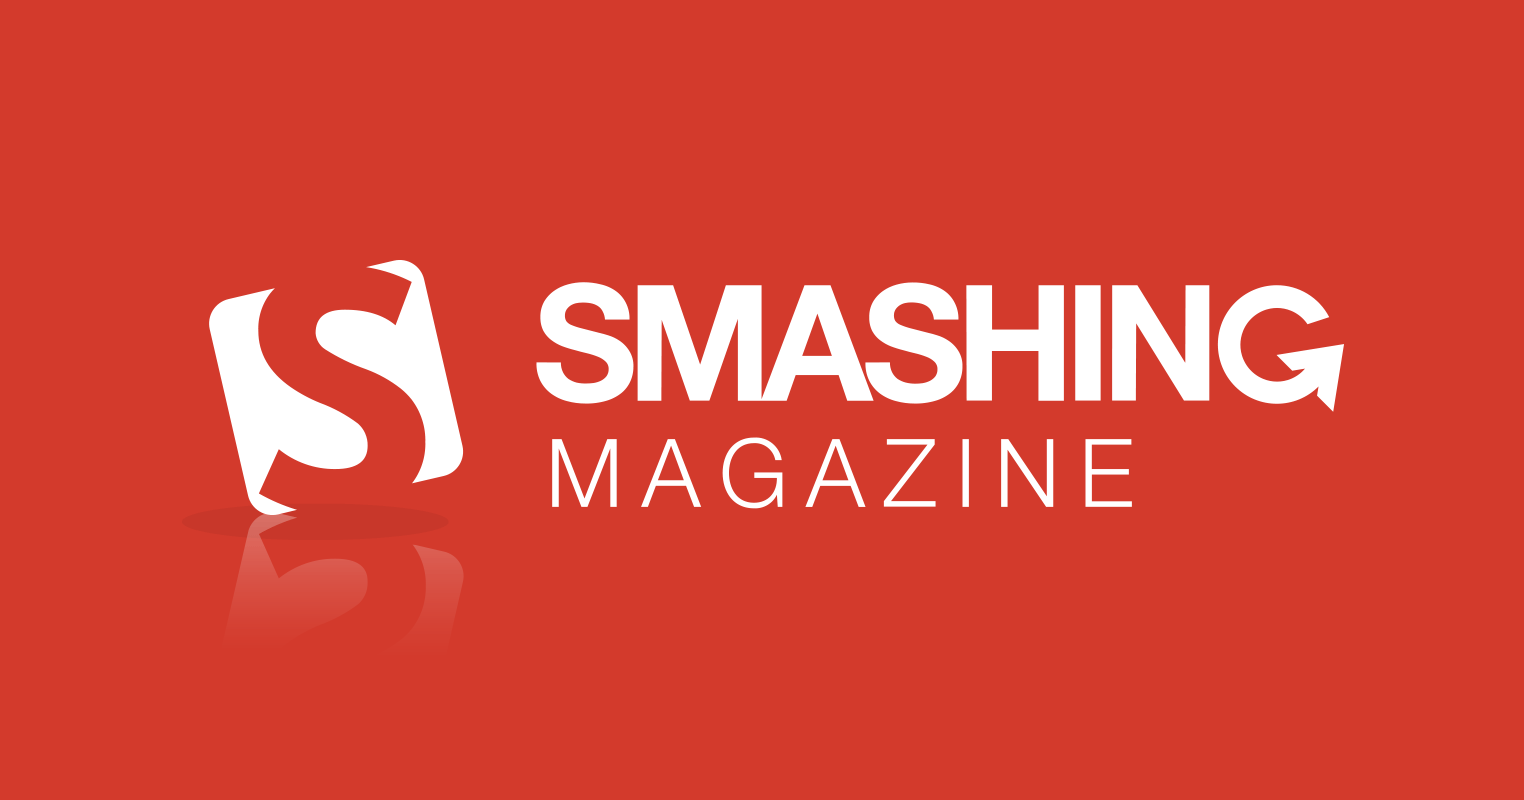 Smashing magazine